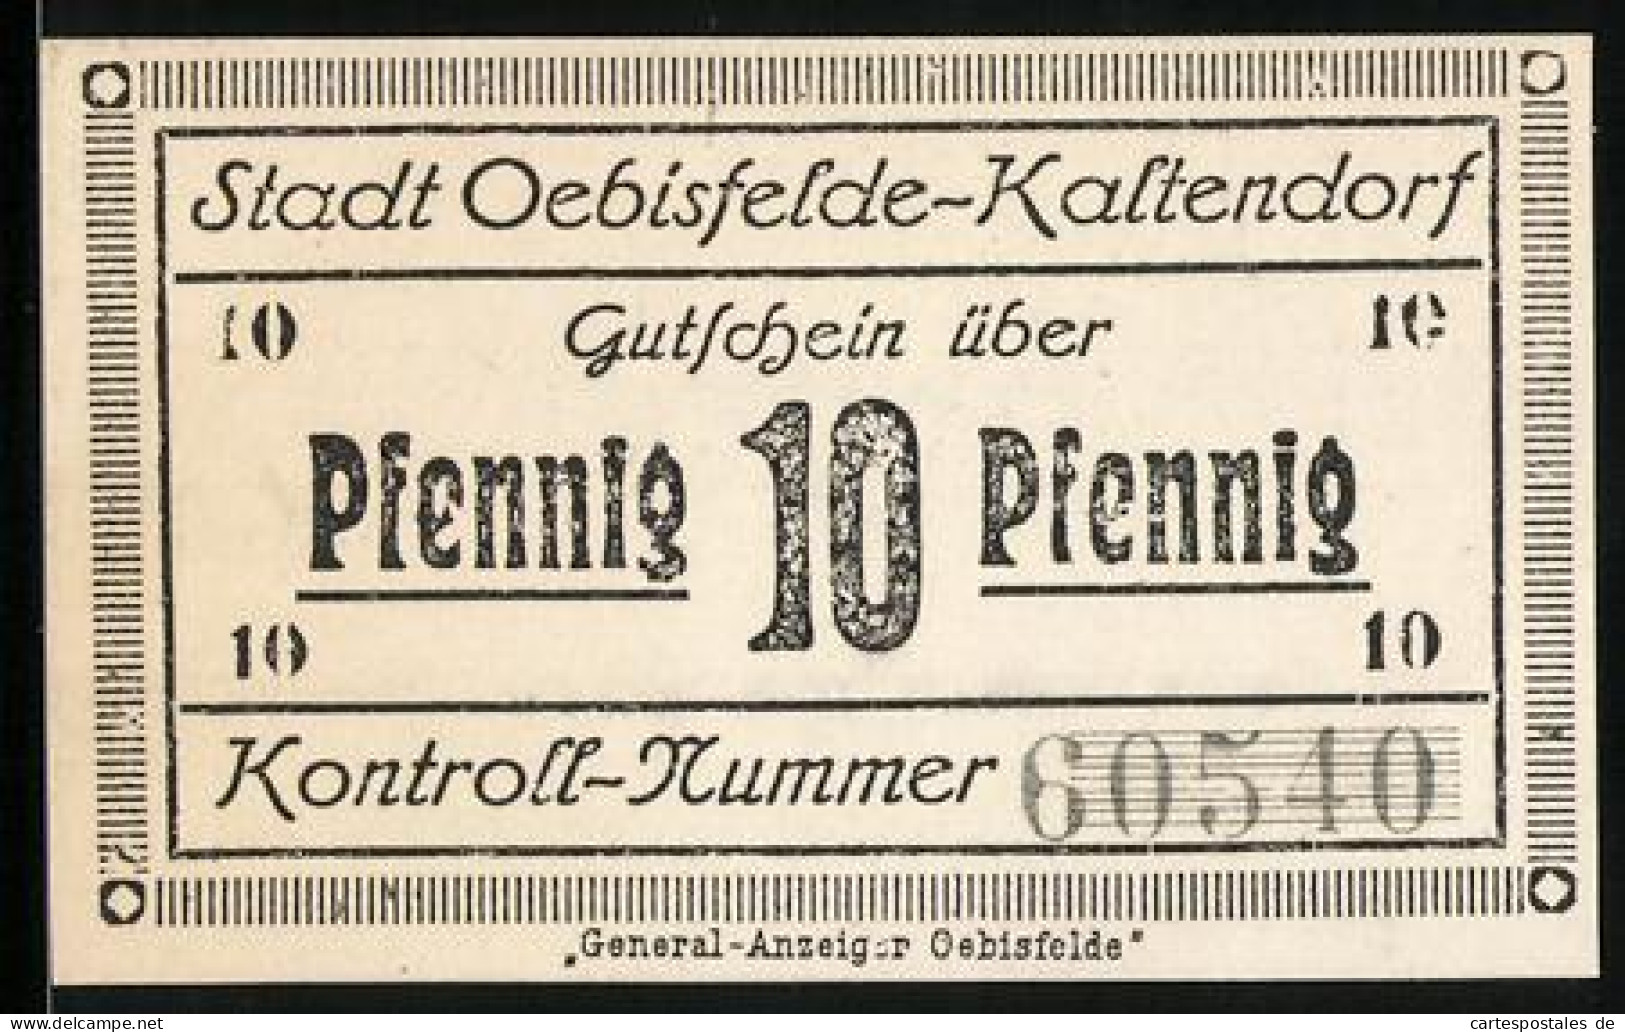 Notgeld Oebisfelde-Kaltendorf, 10 Pfennig, General-Anzeiger Oebisfelde U. Kontroll-Nummer, Stempel Mit Eule, Gutschein  - [11] Emissions Locales